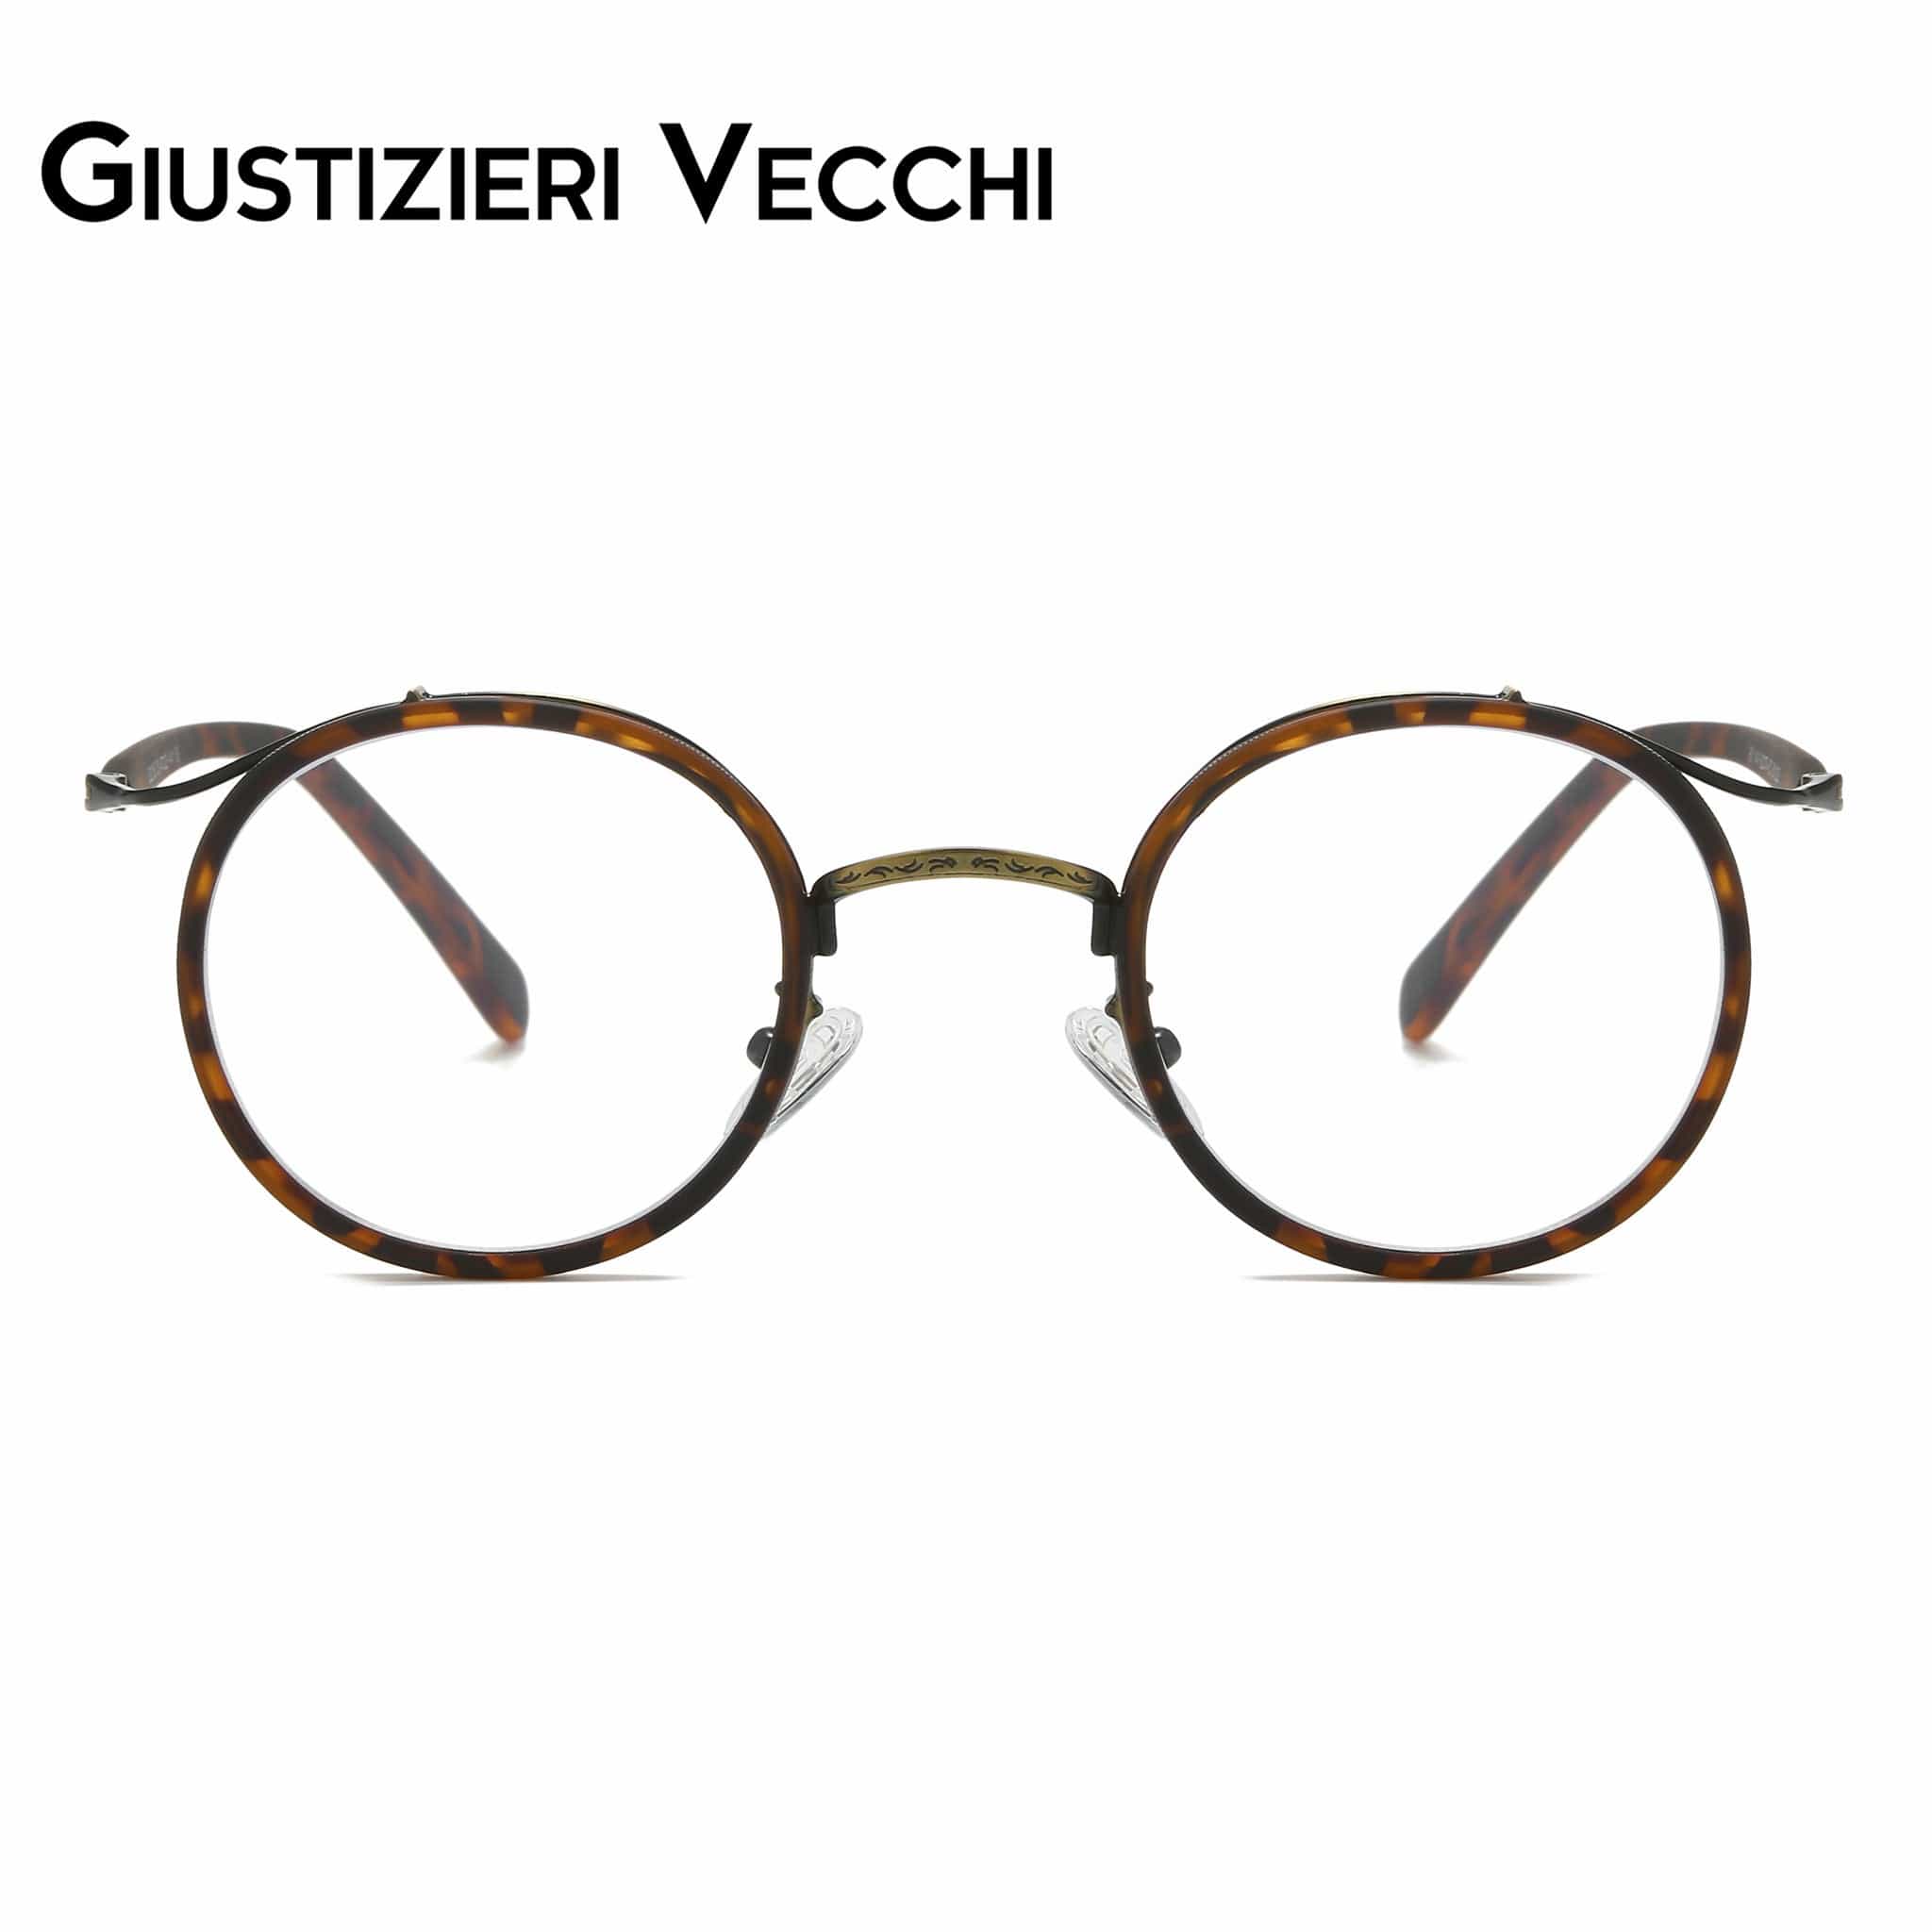 GIUSTIZIERI VECCHI Eyeglasses Small / Merigold Tortoise Grapevine Duo